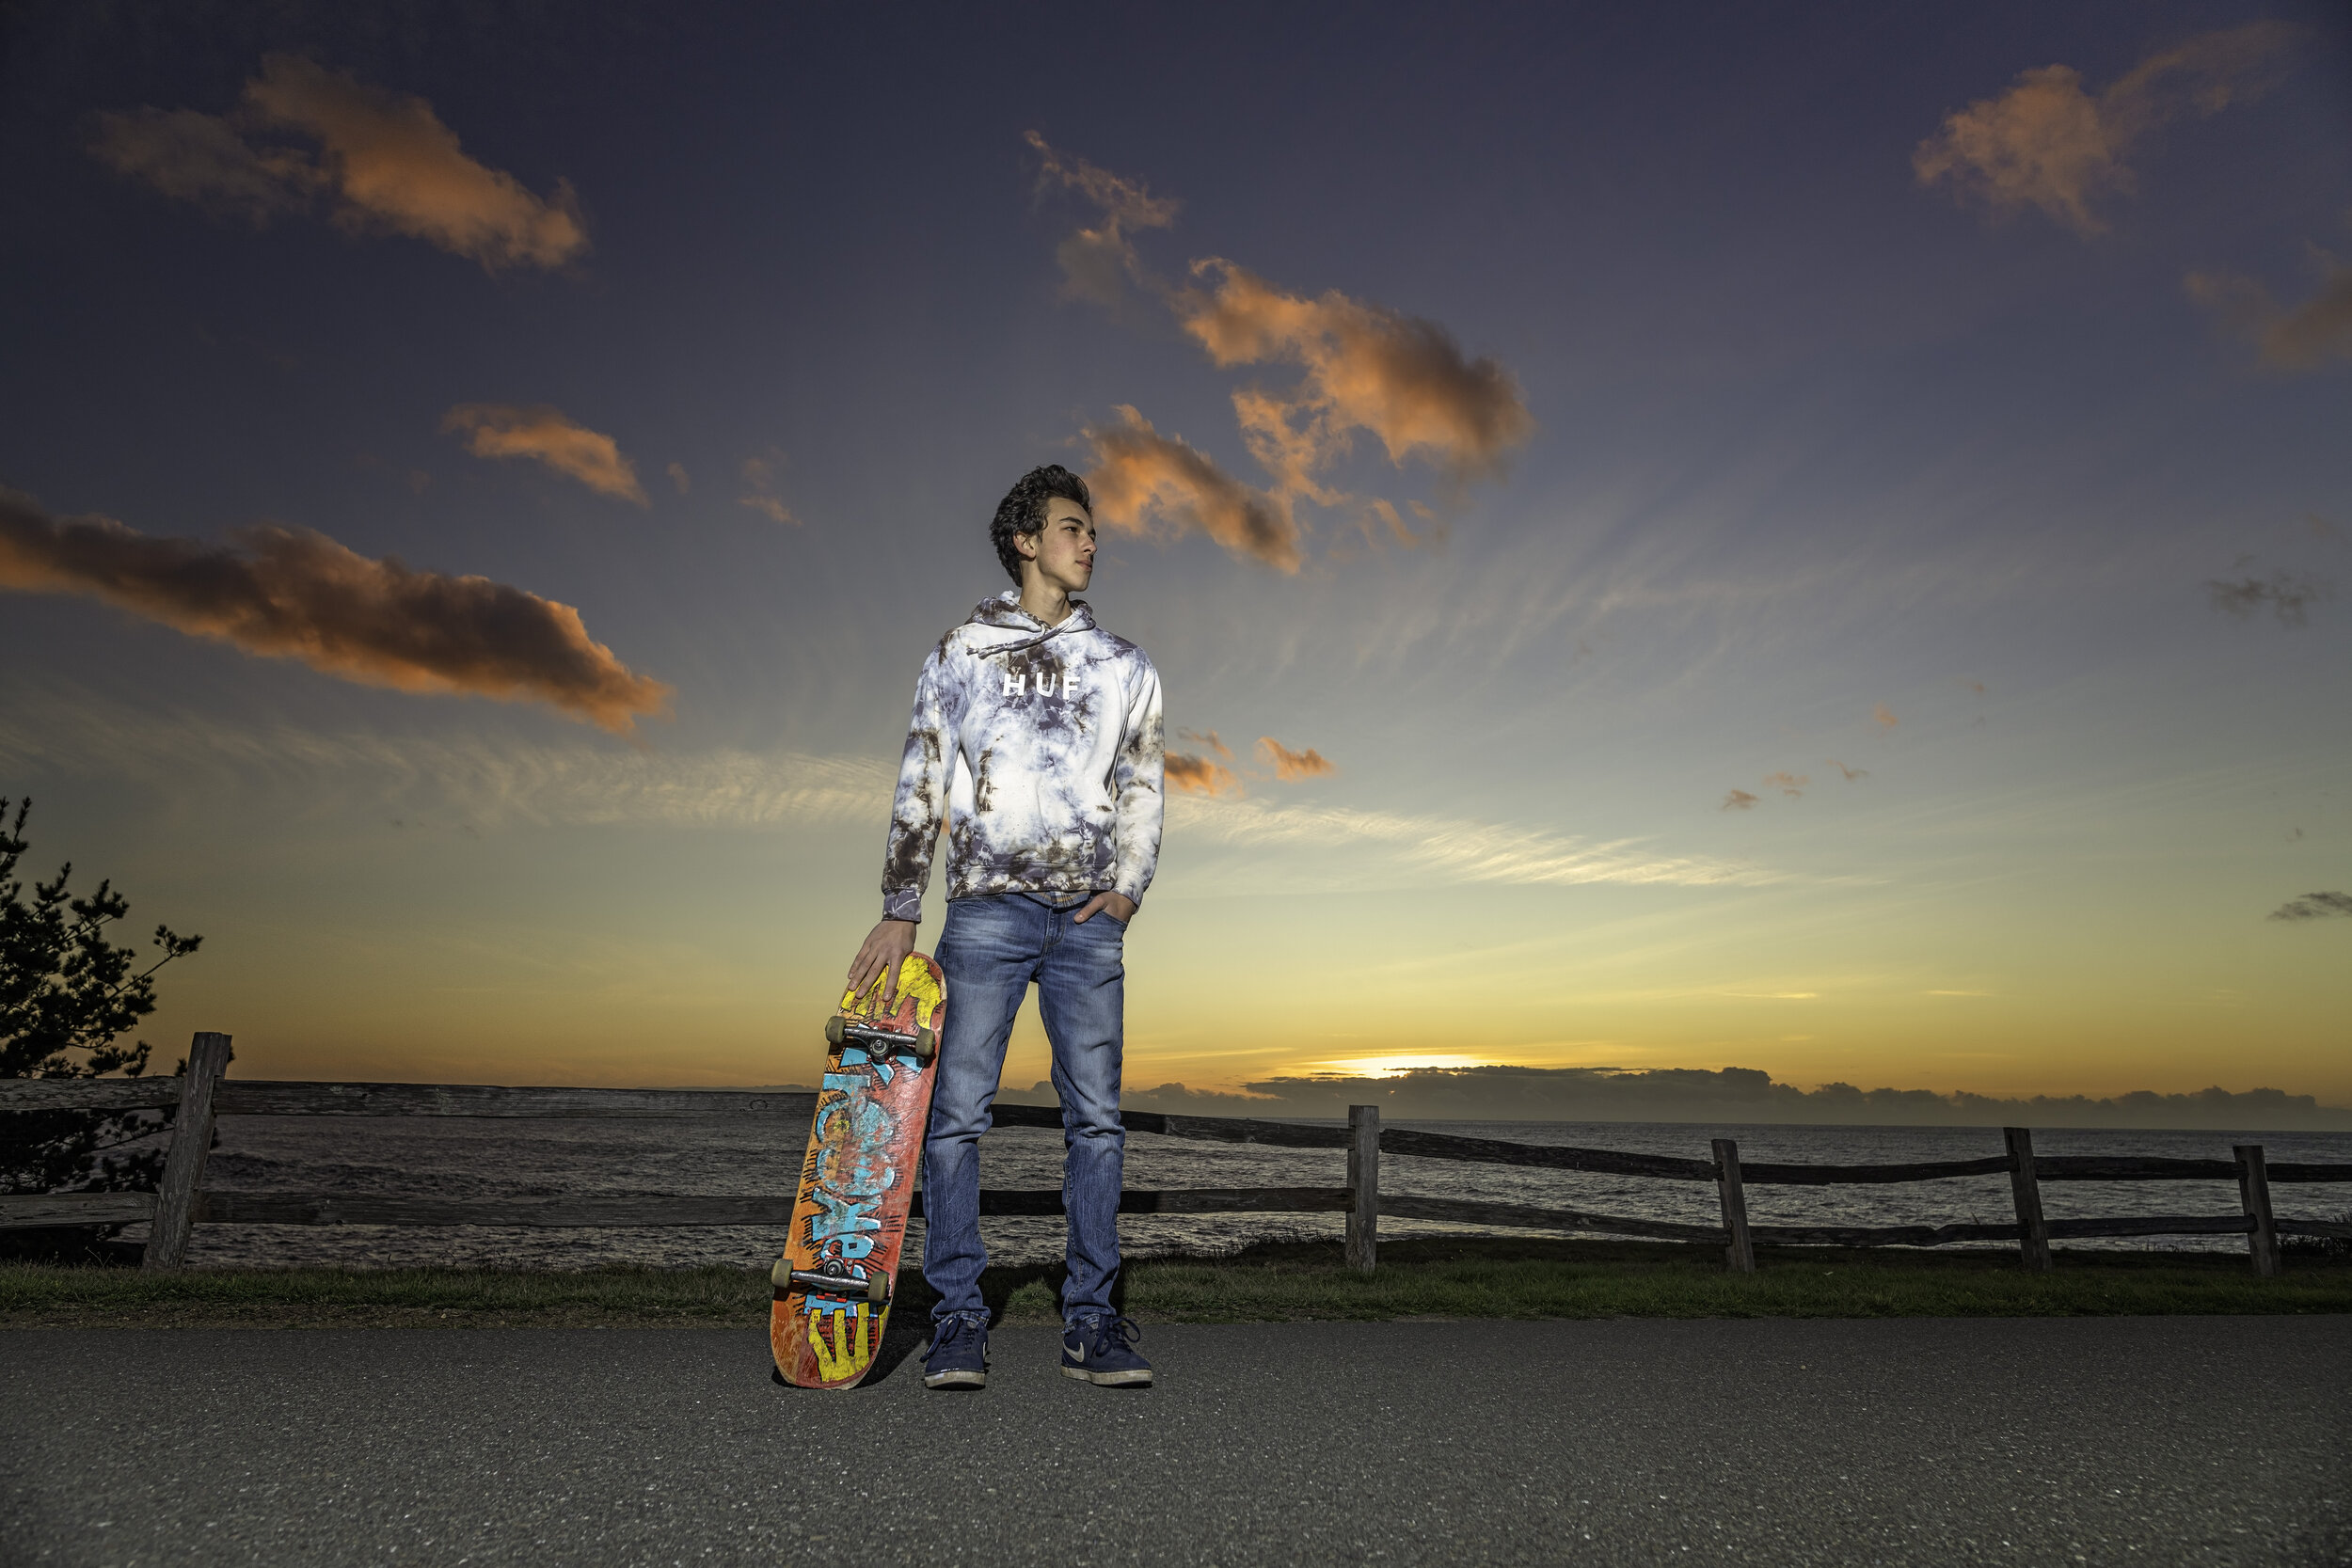 A senior skateboard sunset shoot in Shellter Cove